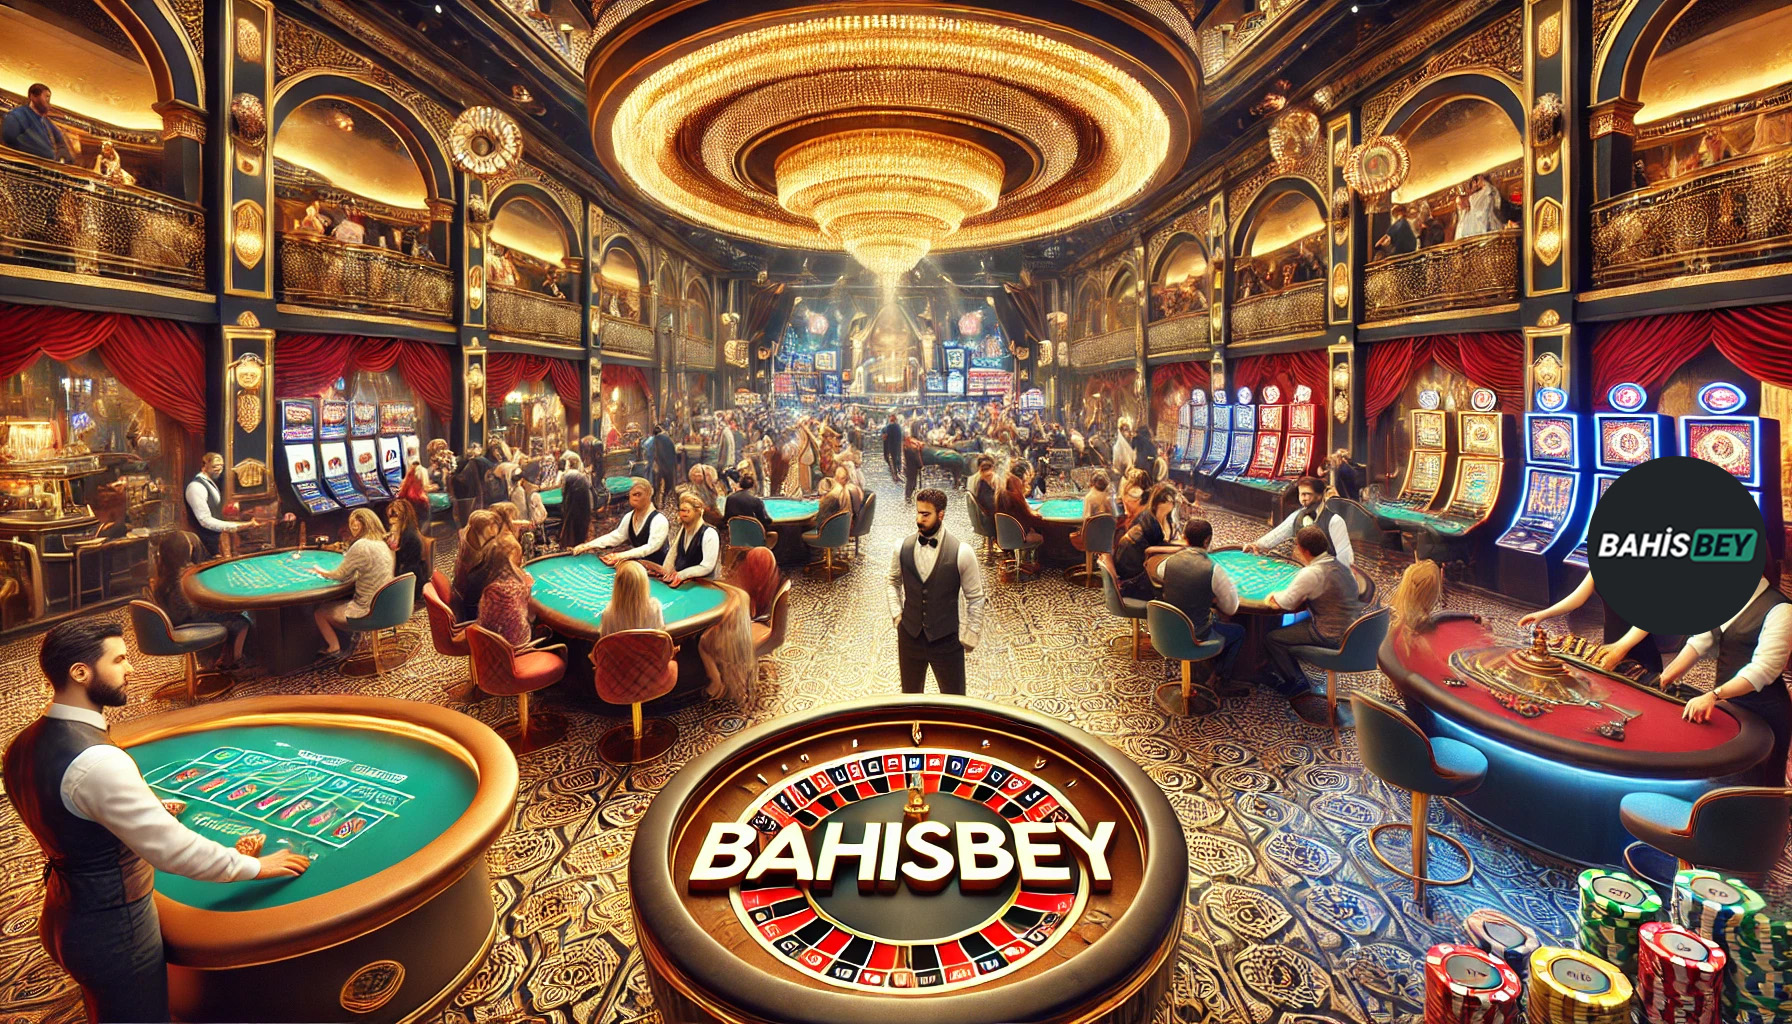 Bahisbey Casino Oyunları: Canlı Slot Rehberi